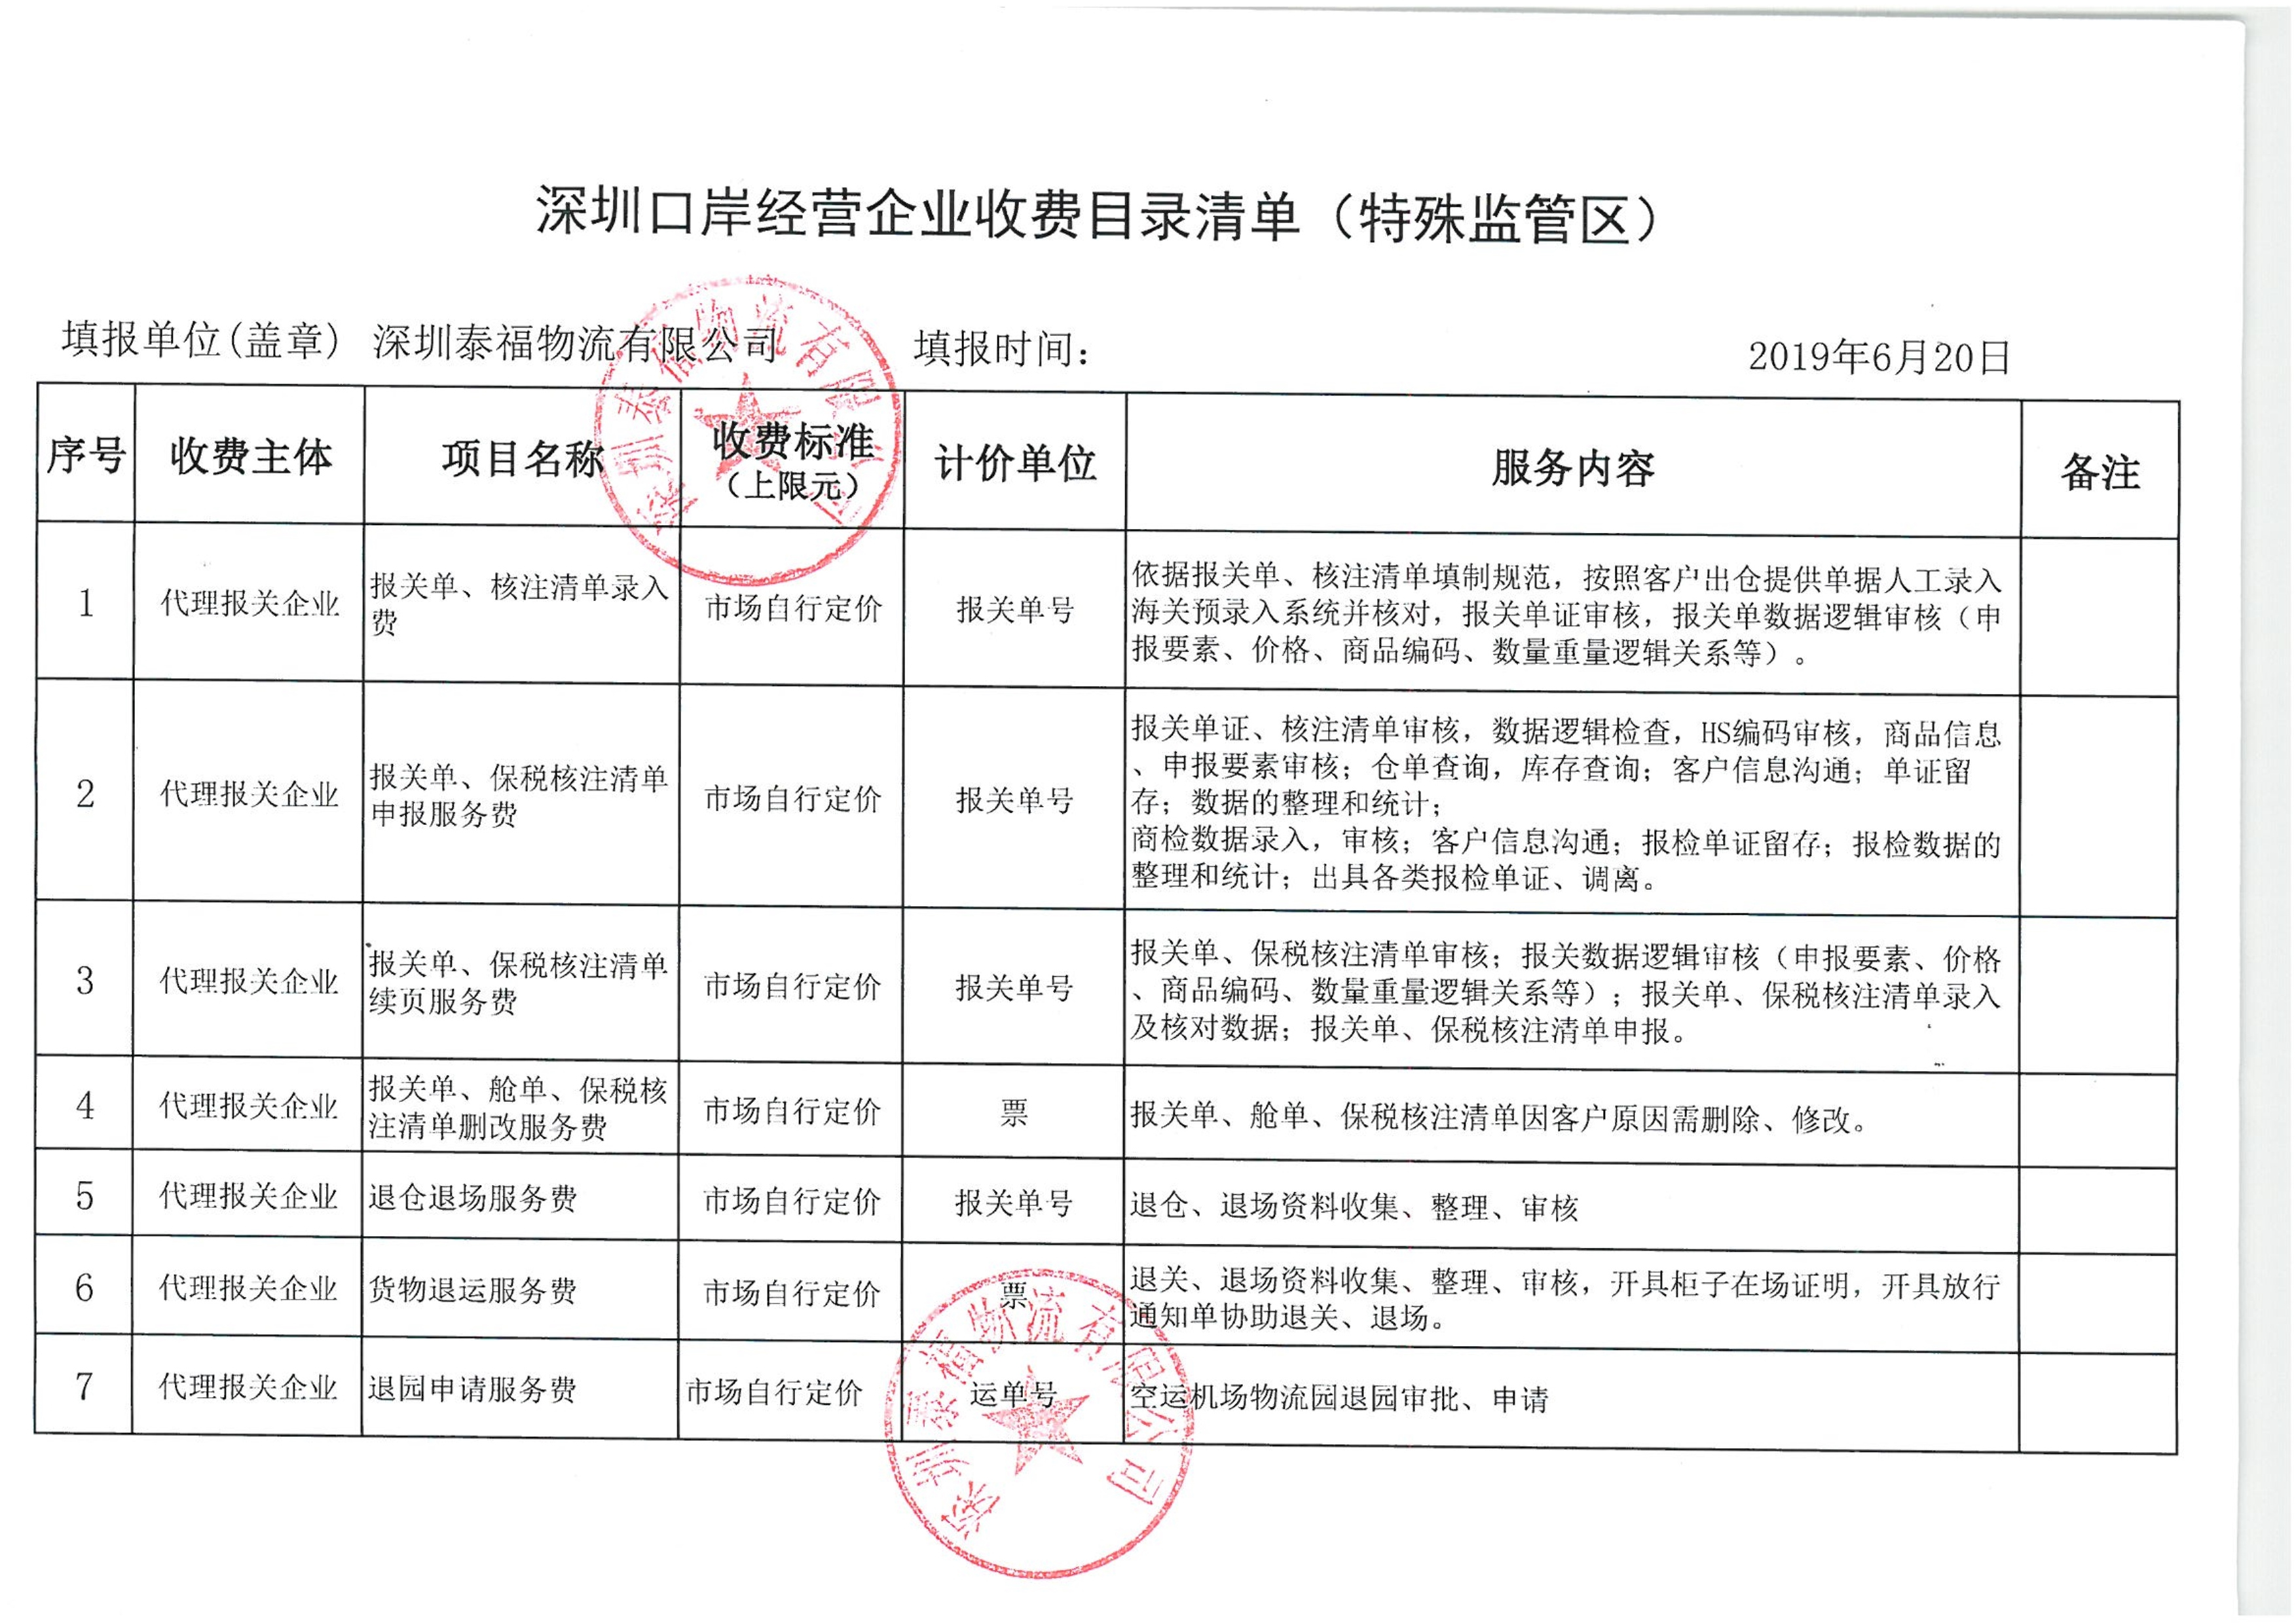 深圳泰福物流有限公司收费目录清单.pdf_4_1.jpg